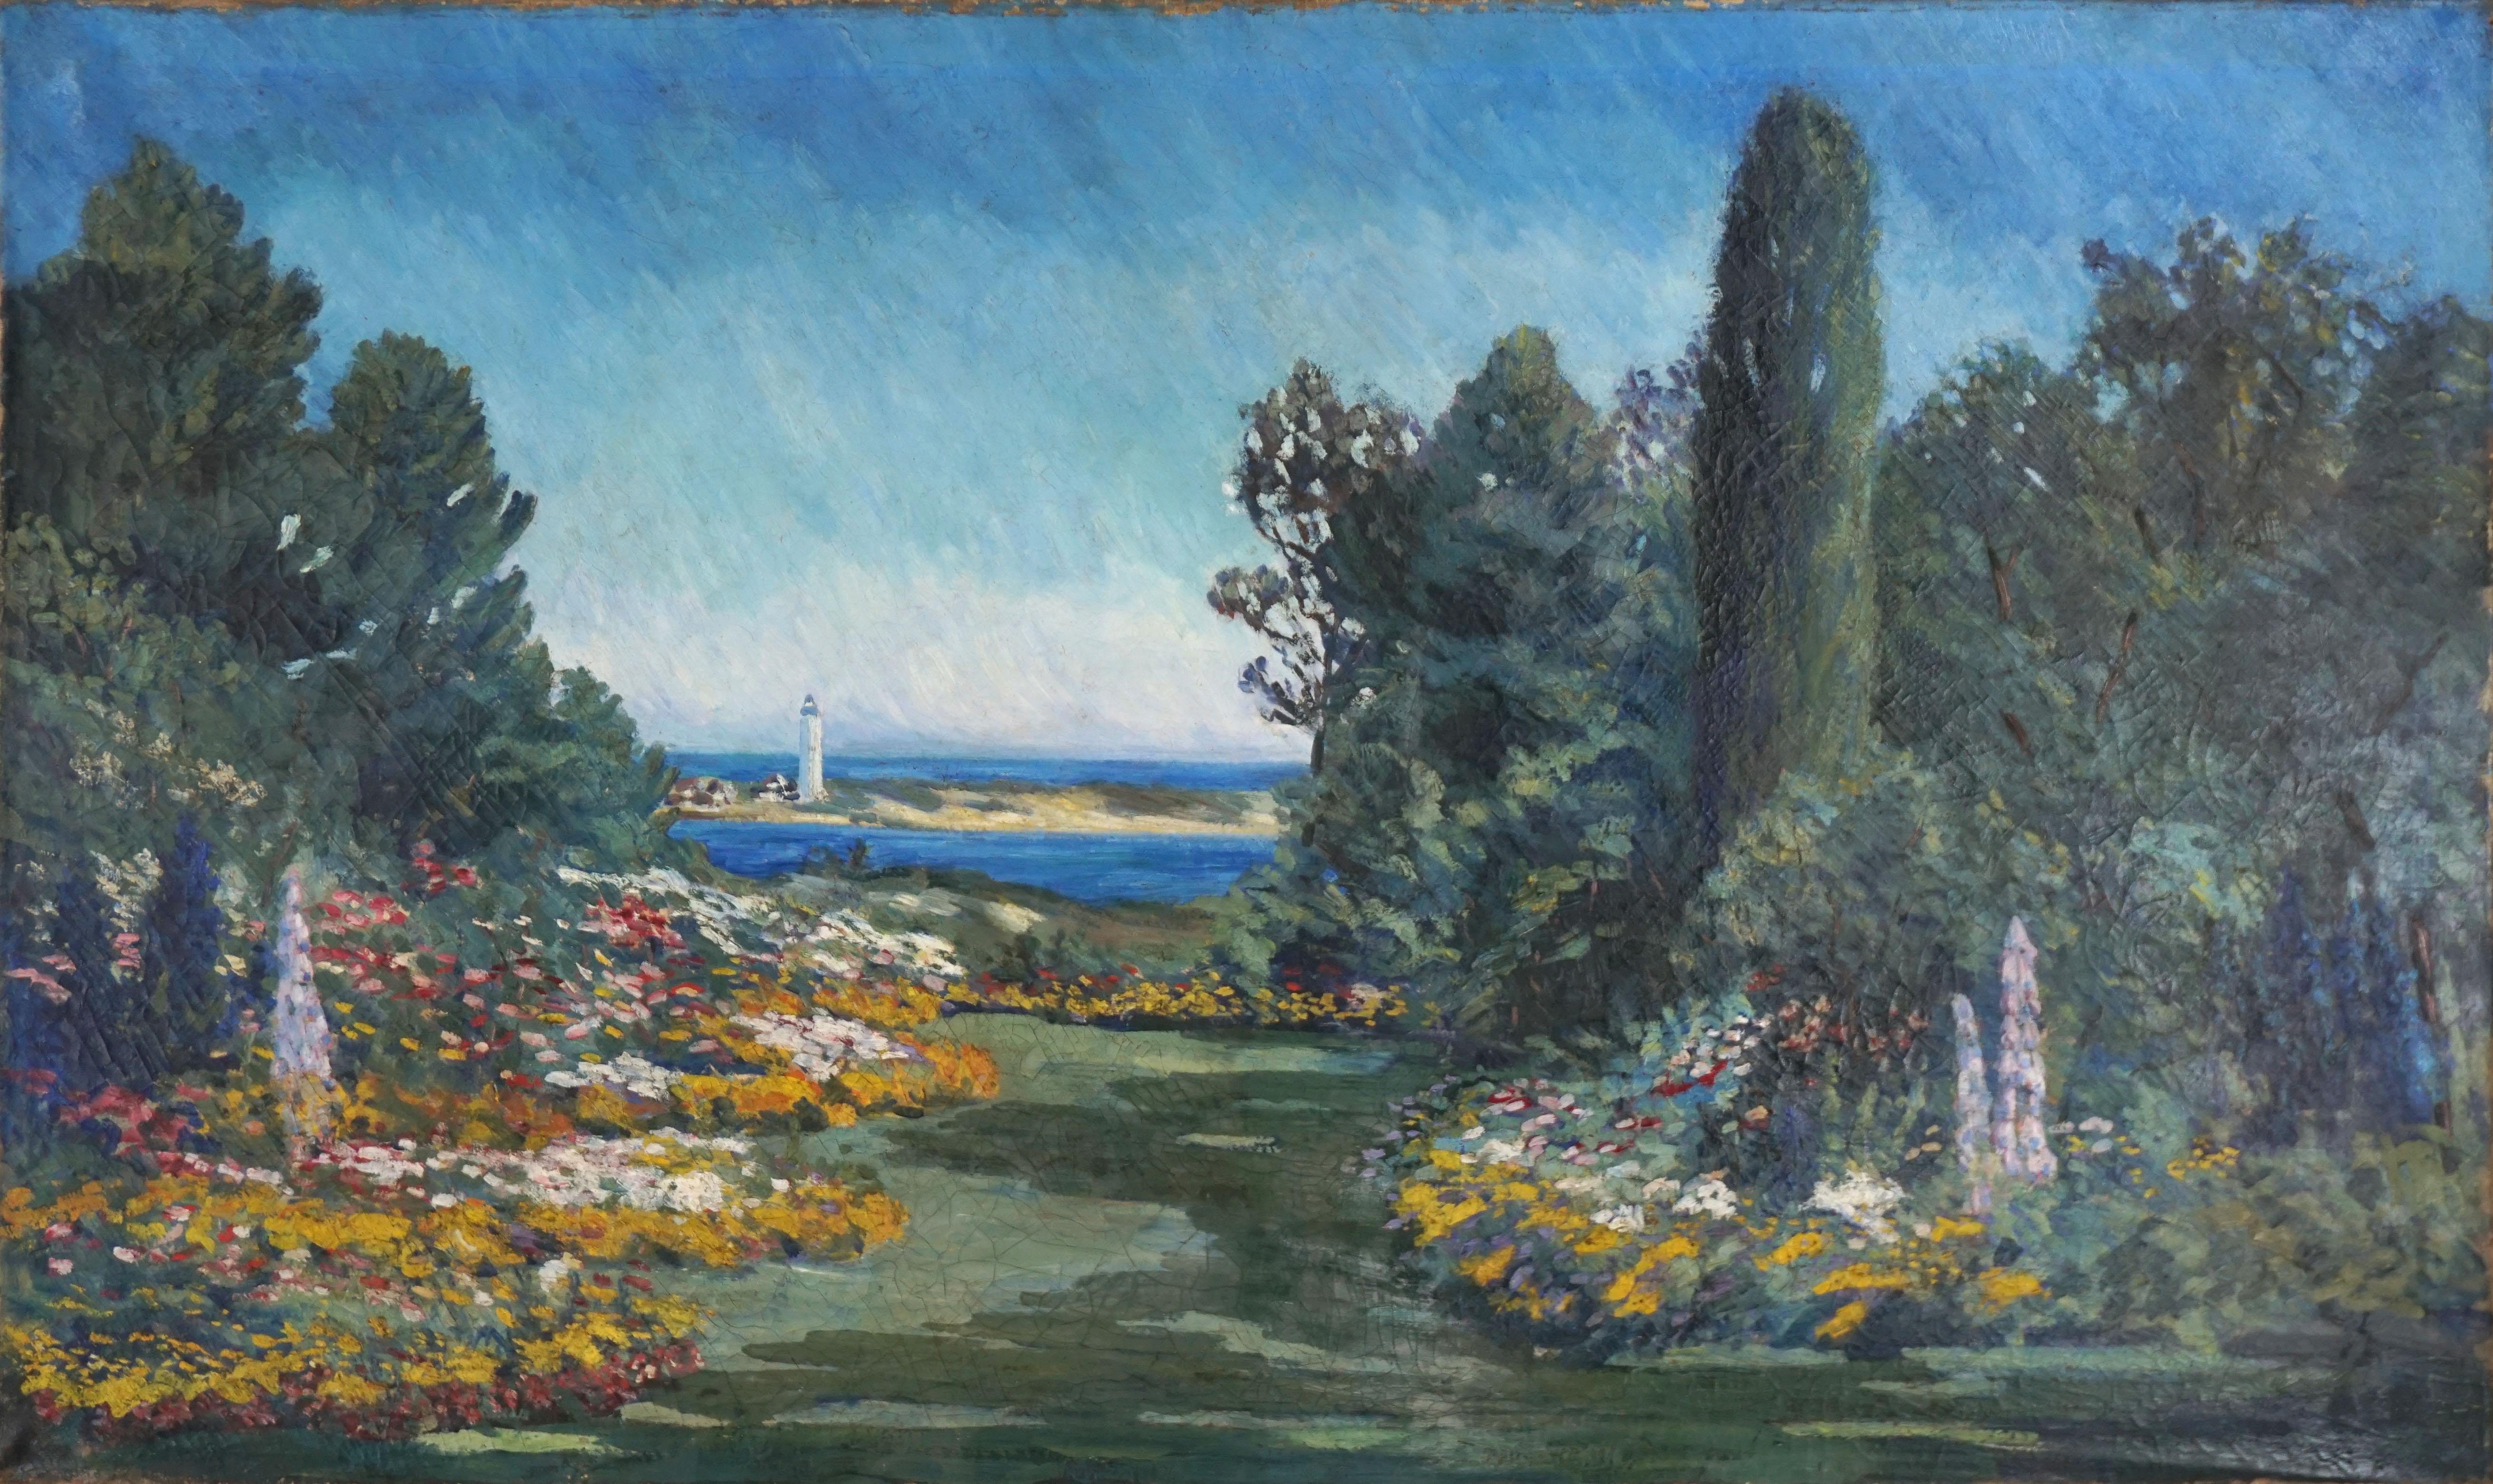 19th century American School Landscape Painting – Große Garten- und Leuchtturm-Landschaft des amerikanischen Impressionismus des 19. Jahrhunderts